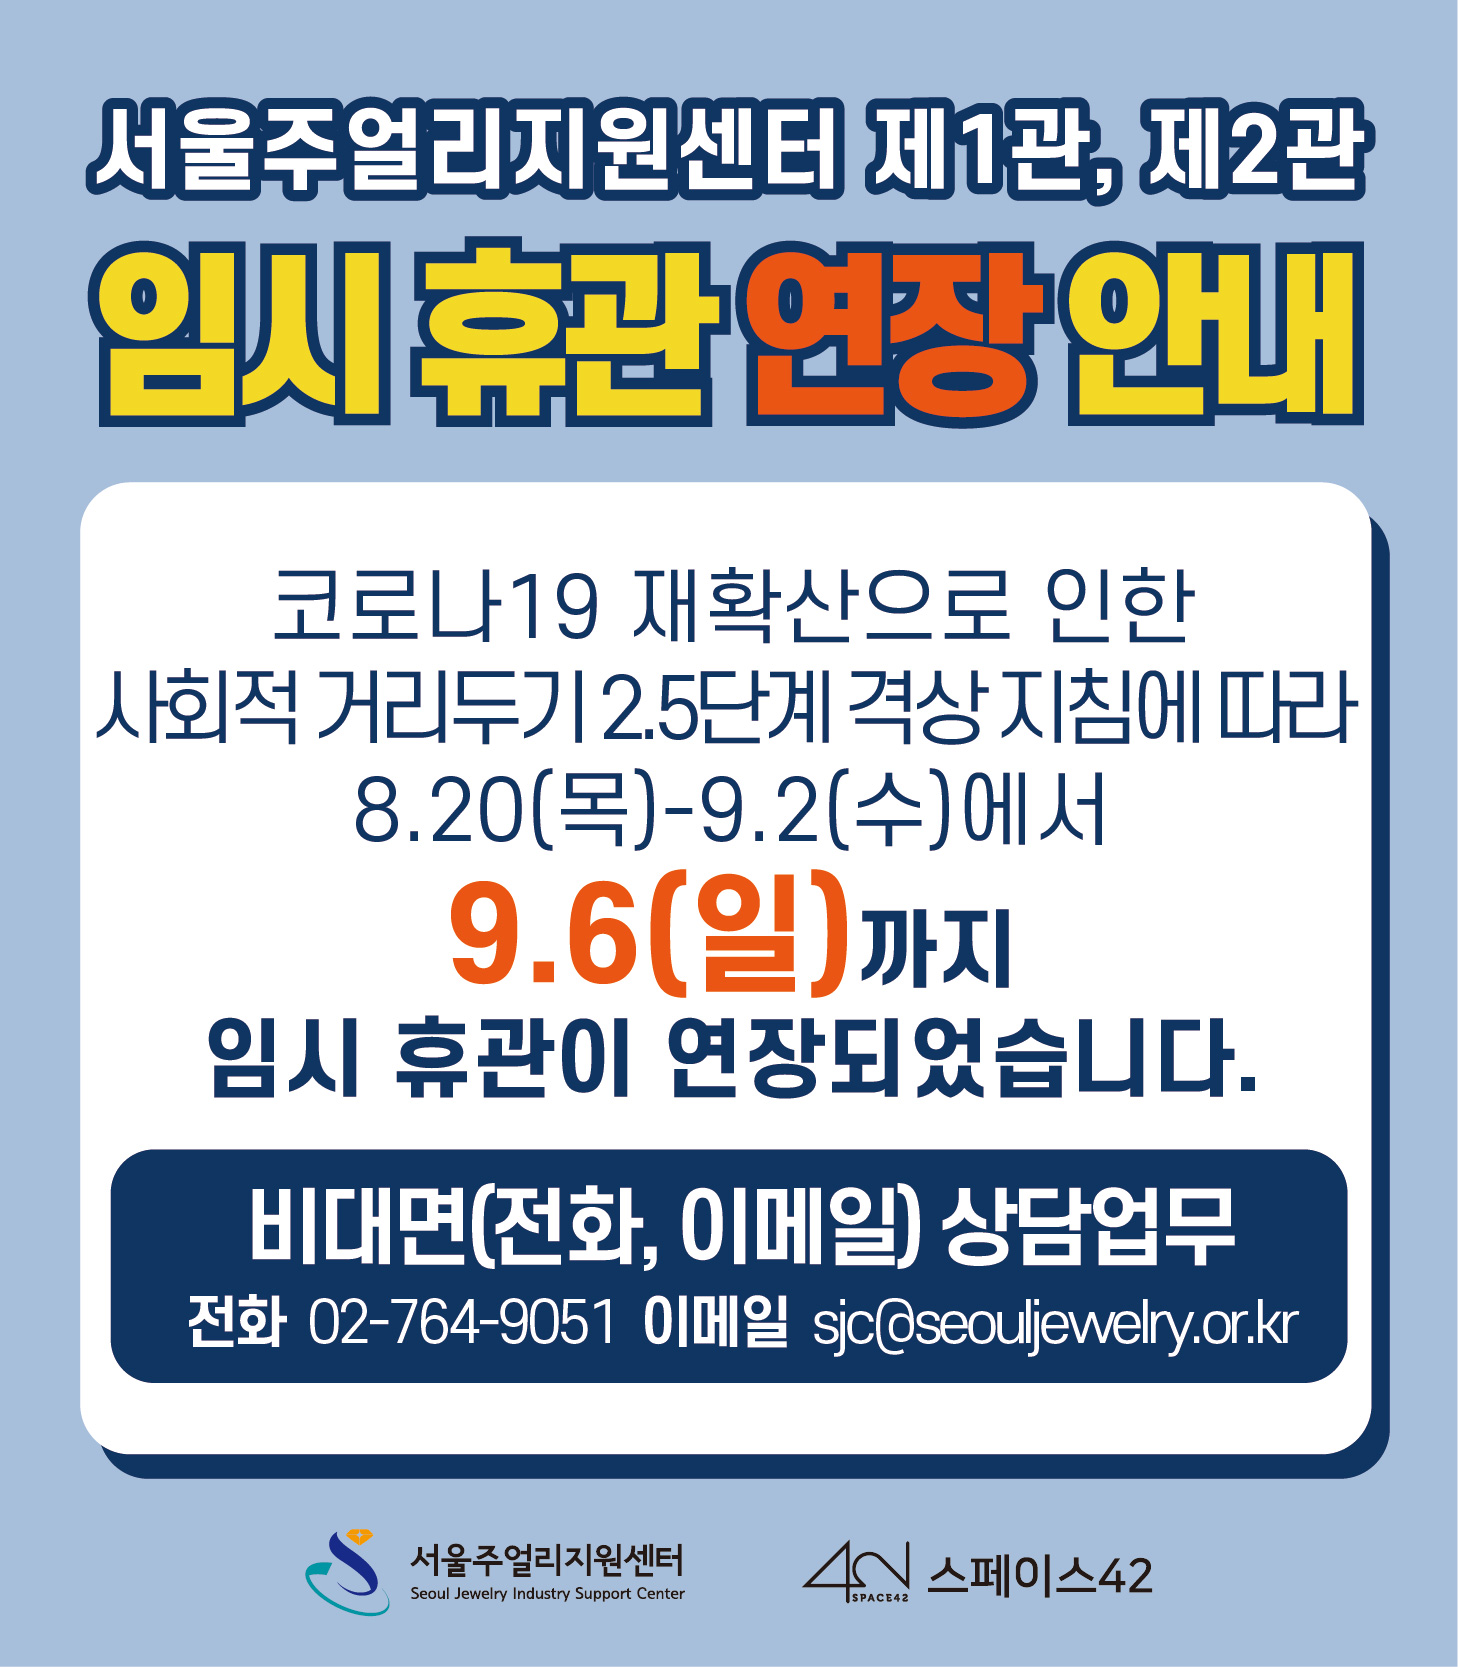 서울주얼리지원센터 제1관, 제2관 임시 휴관 연장 안내